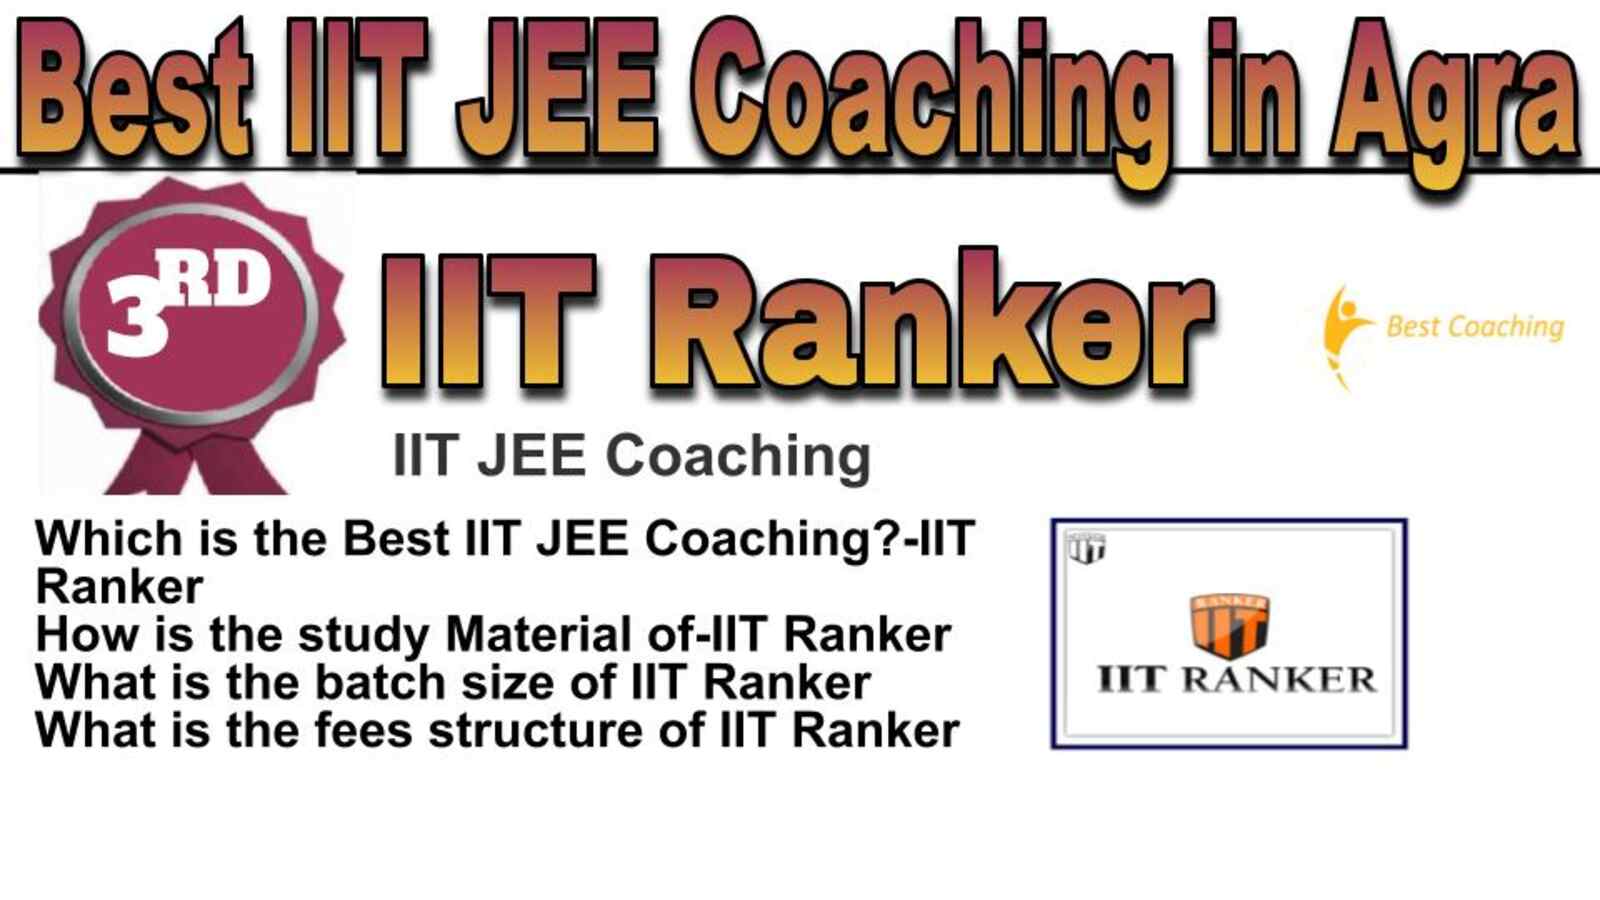 Rank 3 best IIT JEE coaching in Agra